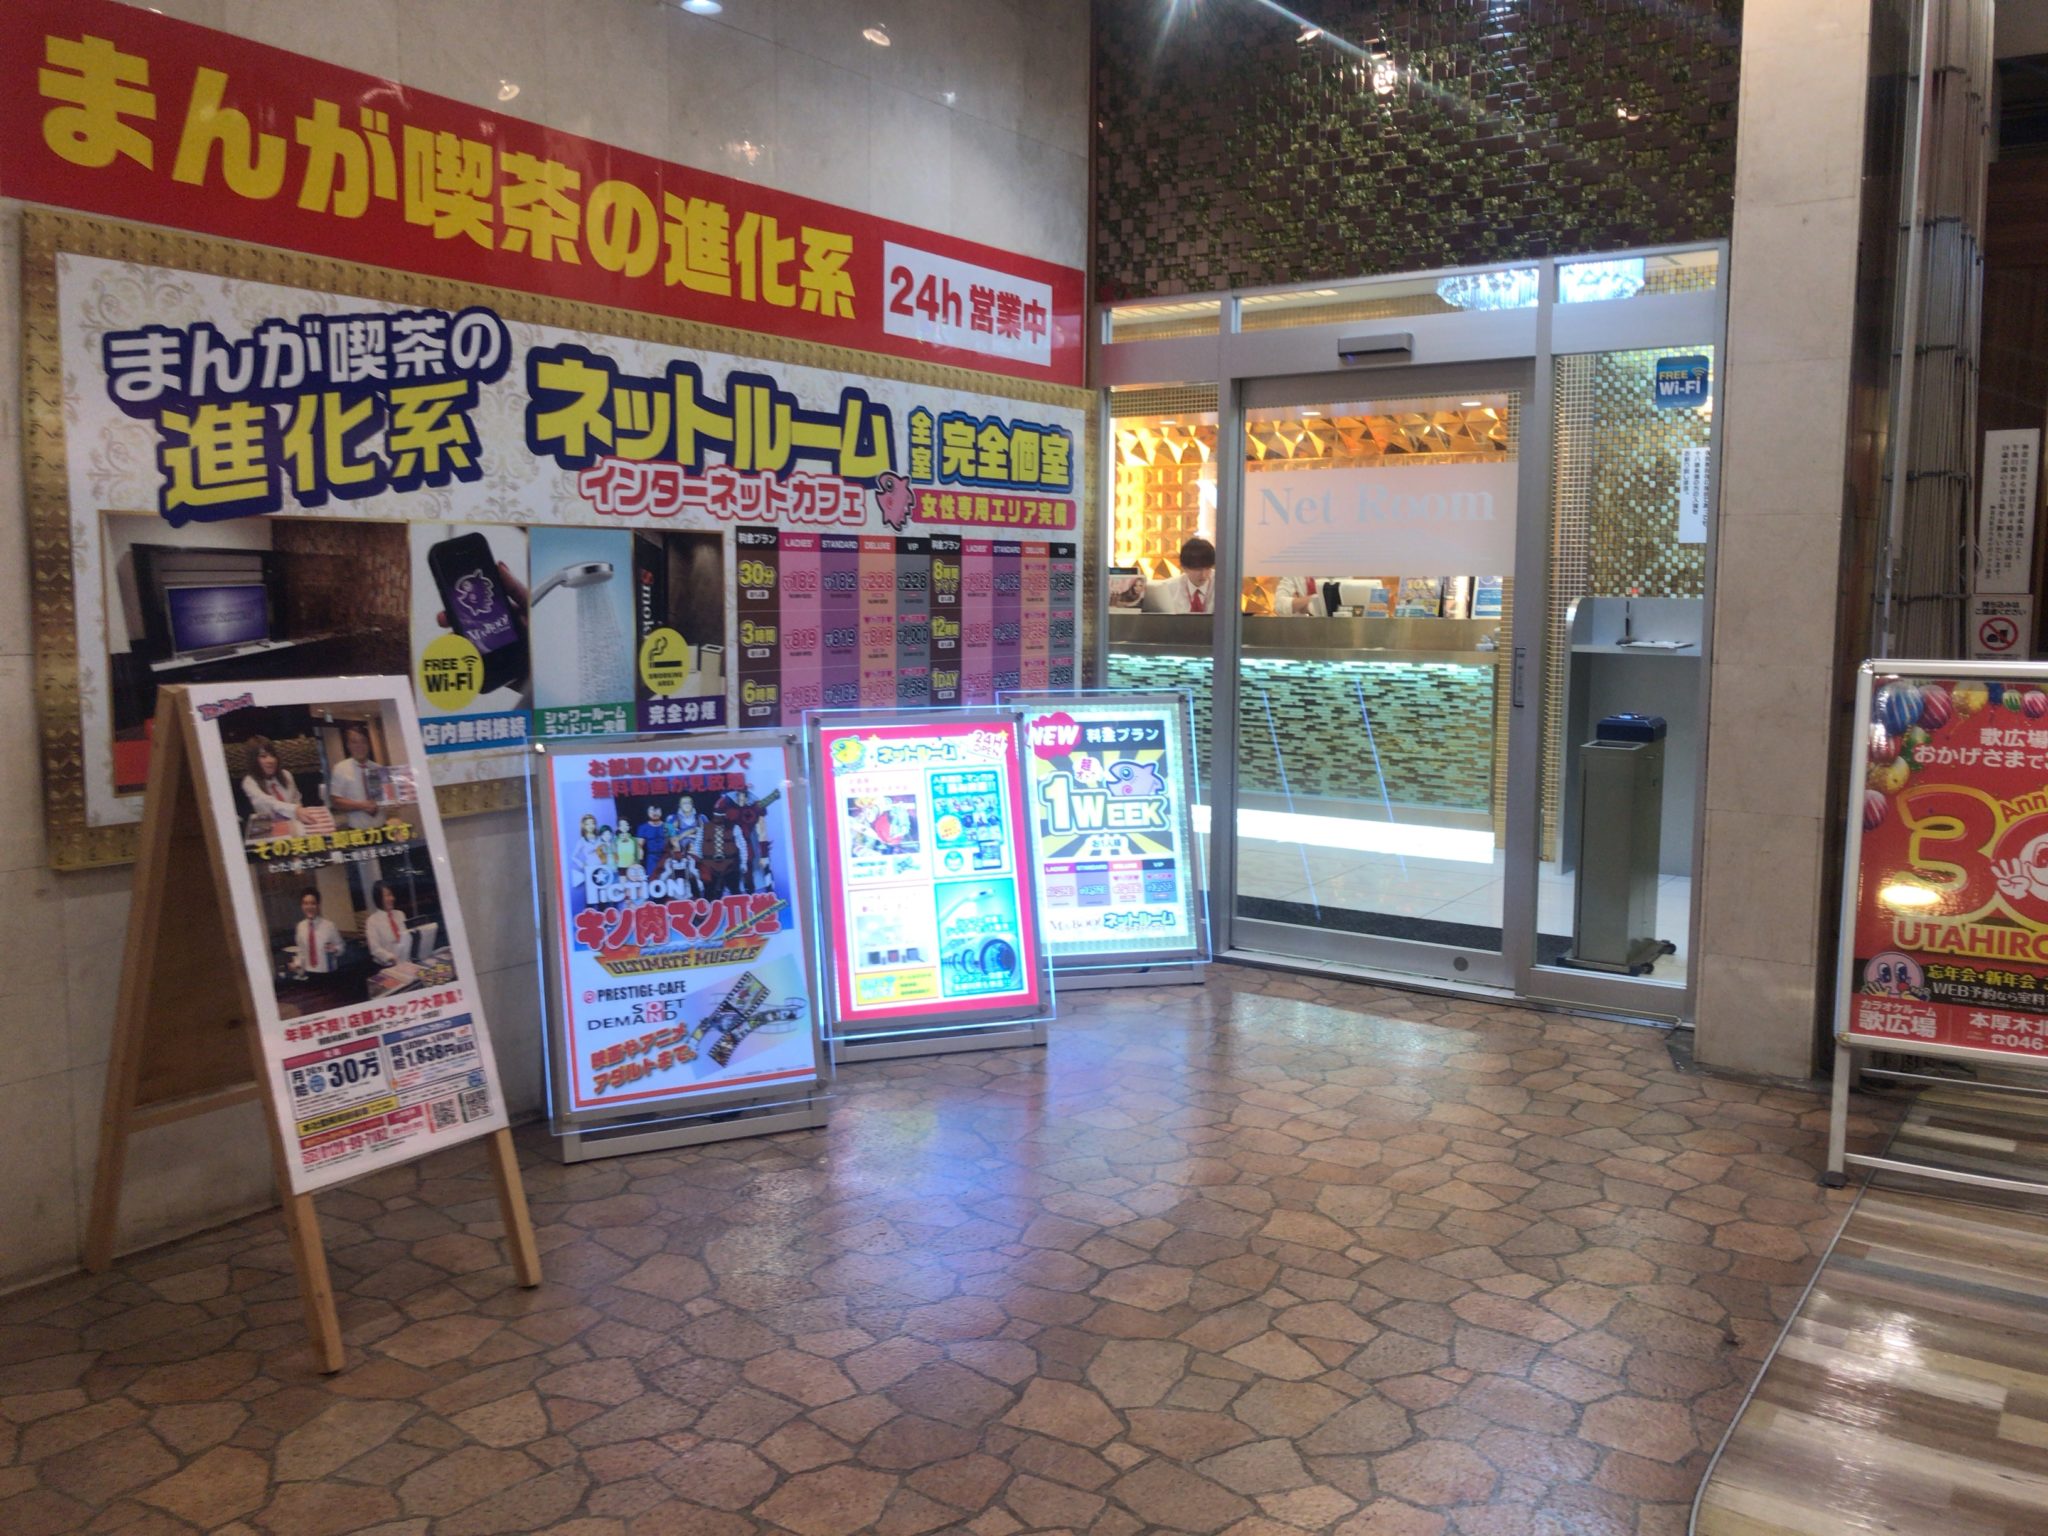 本厚木駅から徒歩2分 ネットルームマンボー 本厚木店をレポート 日本全国のネカフェ 漫画喫茶マップのヒマップ